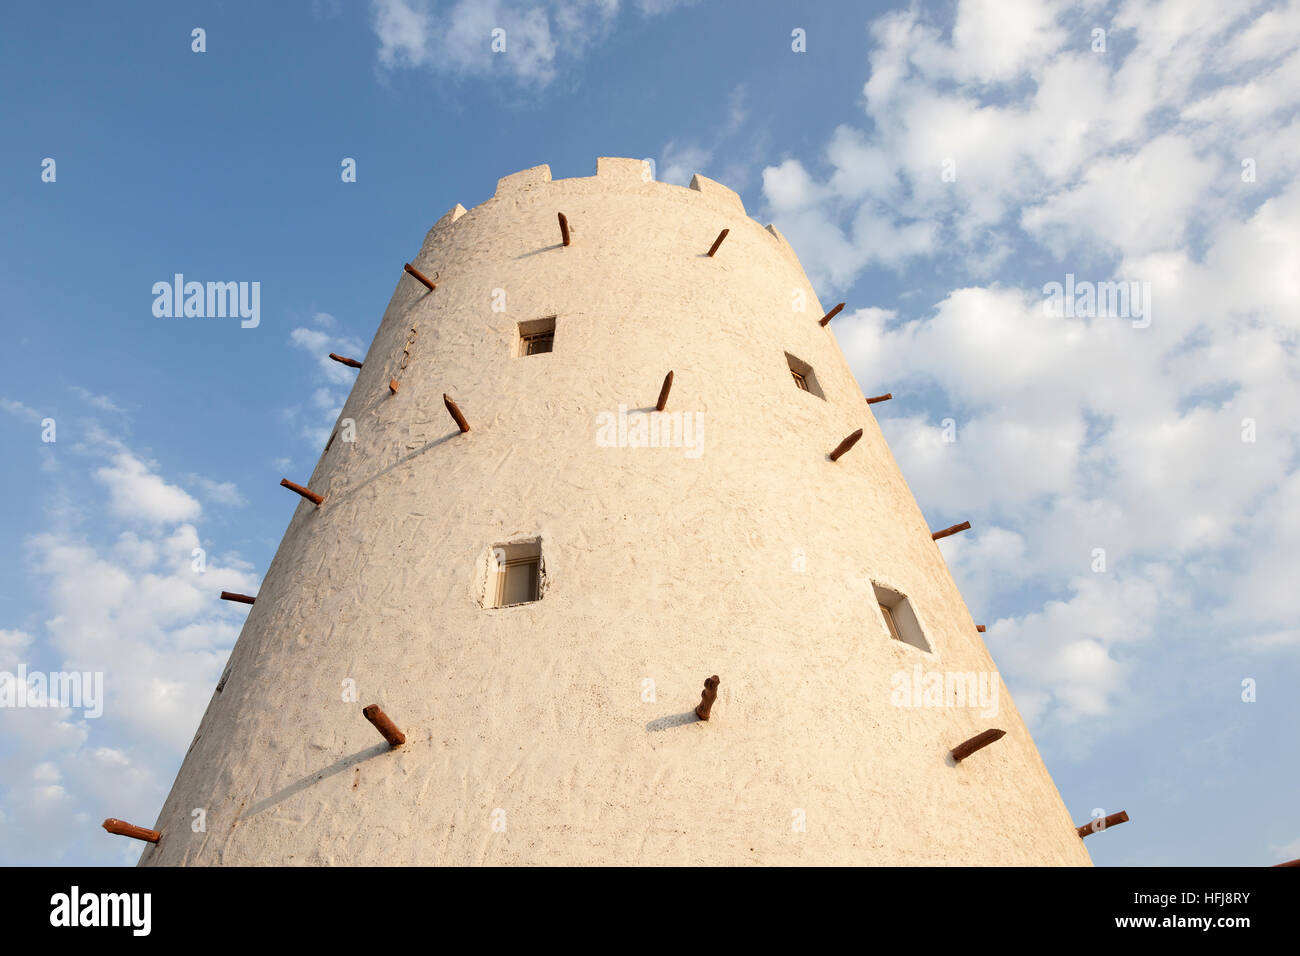 Historischen Turm in der Stadt Abu Dhabi, Vereinigte Arabische Emirate Stockfoto